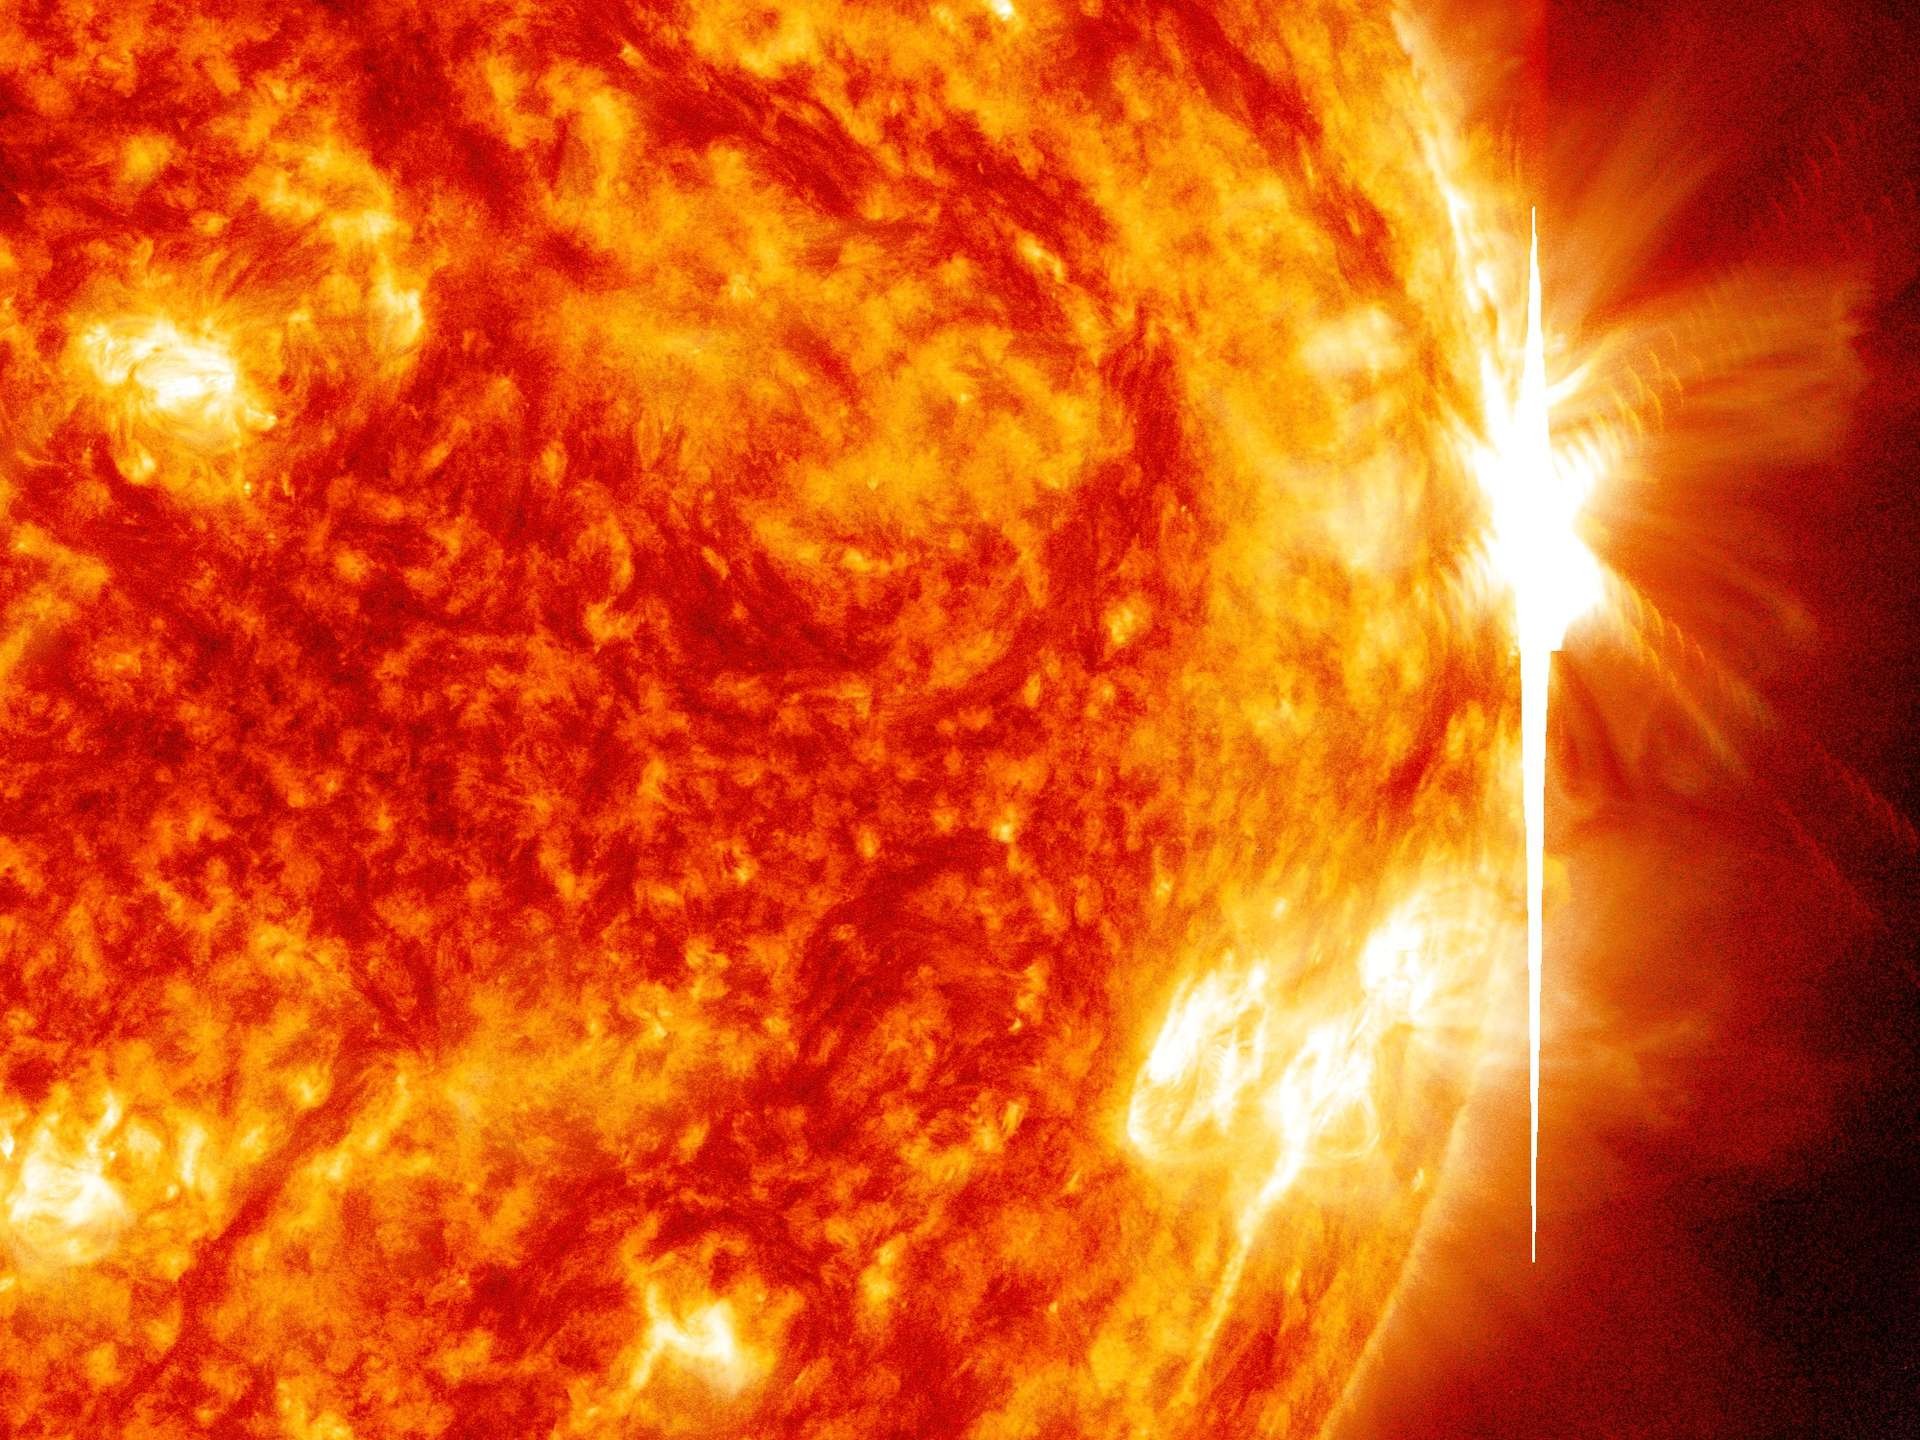 oct 29 304 193 overlay crop - Behörden warnen nach der Beobachtung von drei Sonneneruptionen vor möglichen geomagnetischen Stürmen